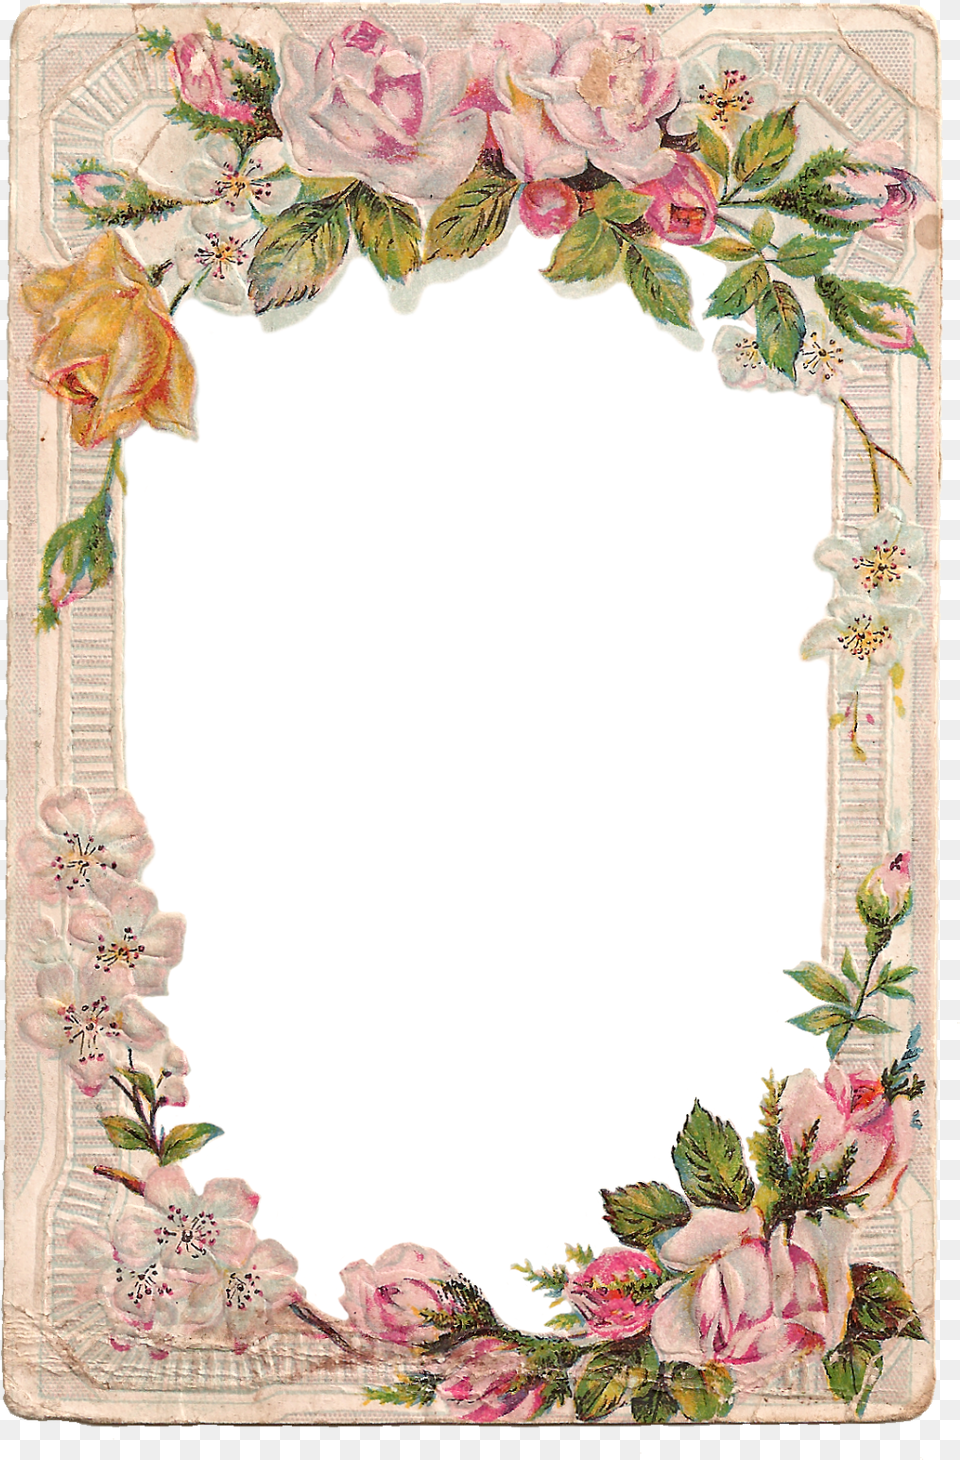 Vintage Digital Flower Frame With Roses And Dogwood Frame Flower Border Design, Art, Floral Design, Graphics, Pattern Free Transparent Png